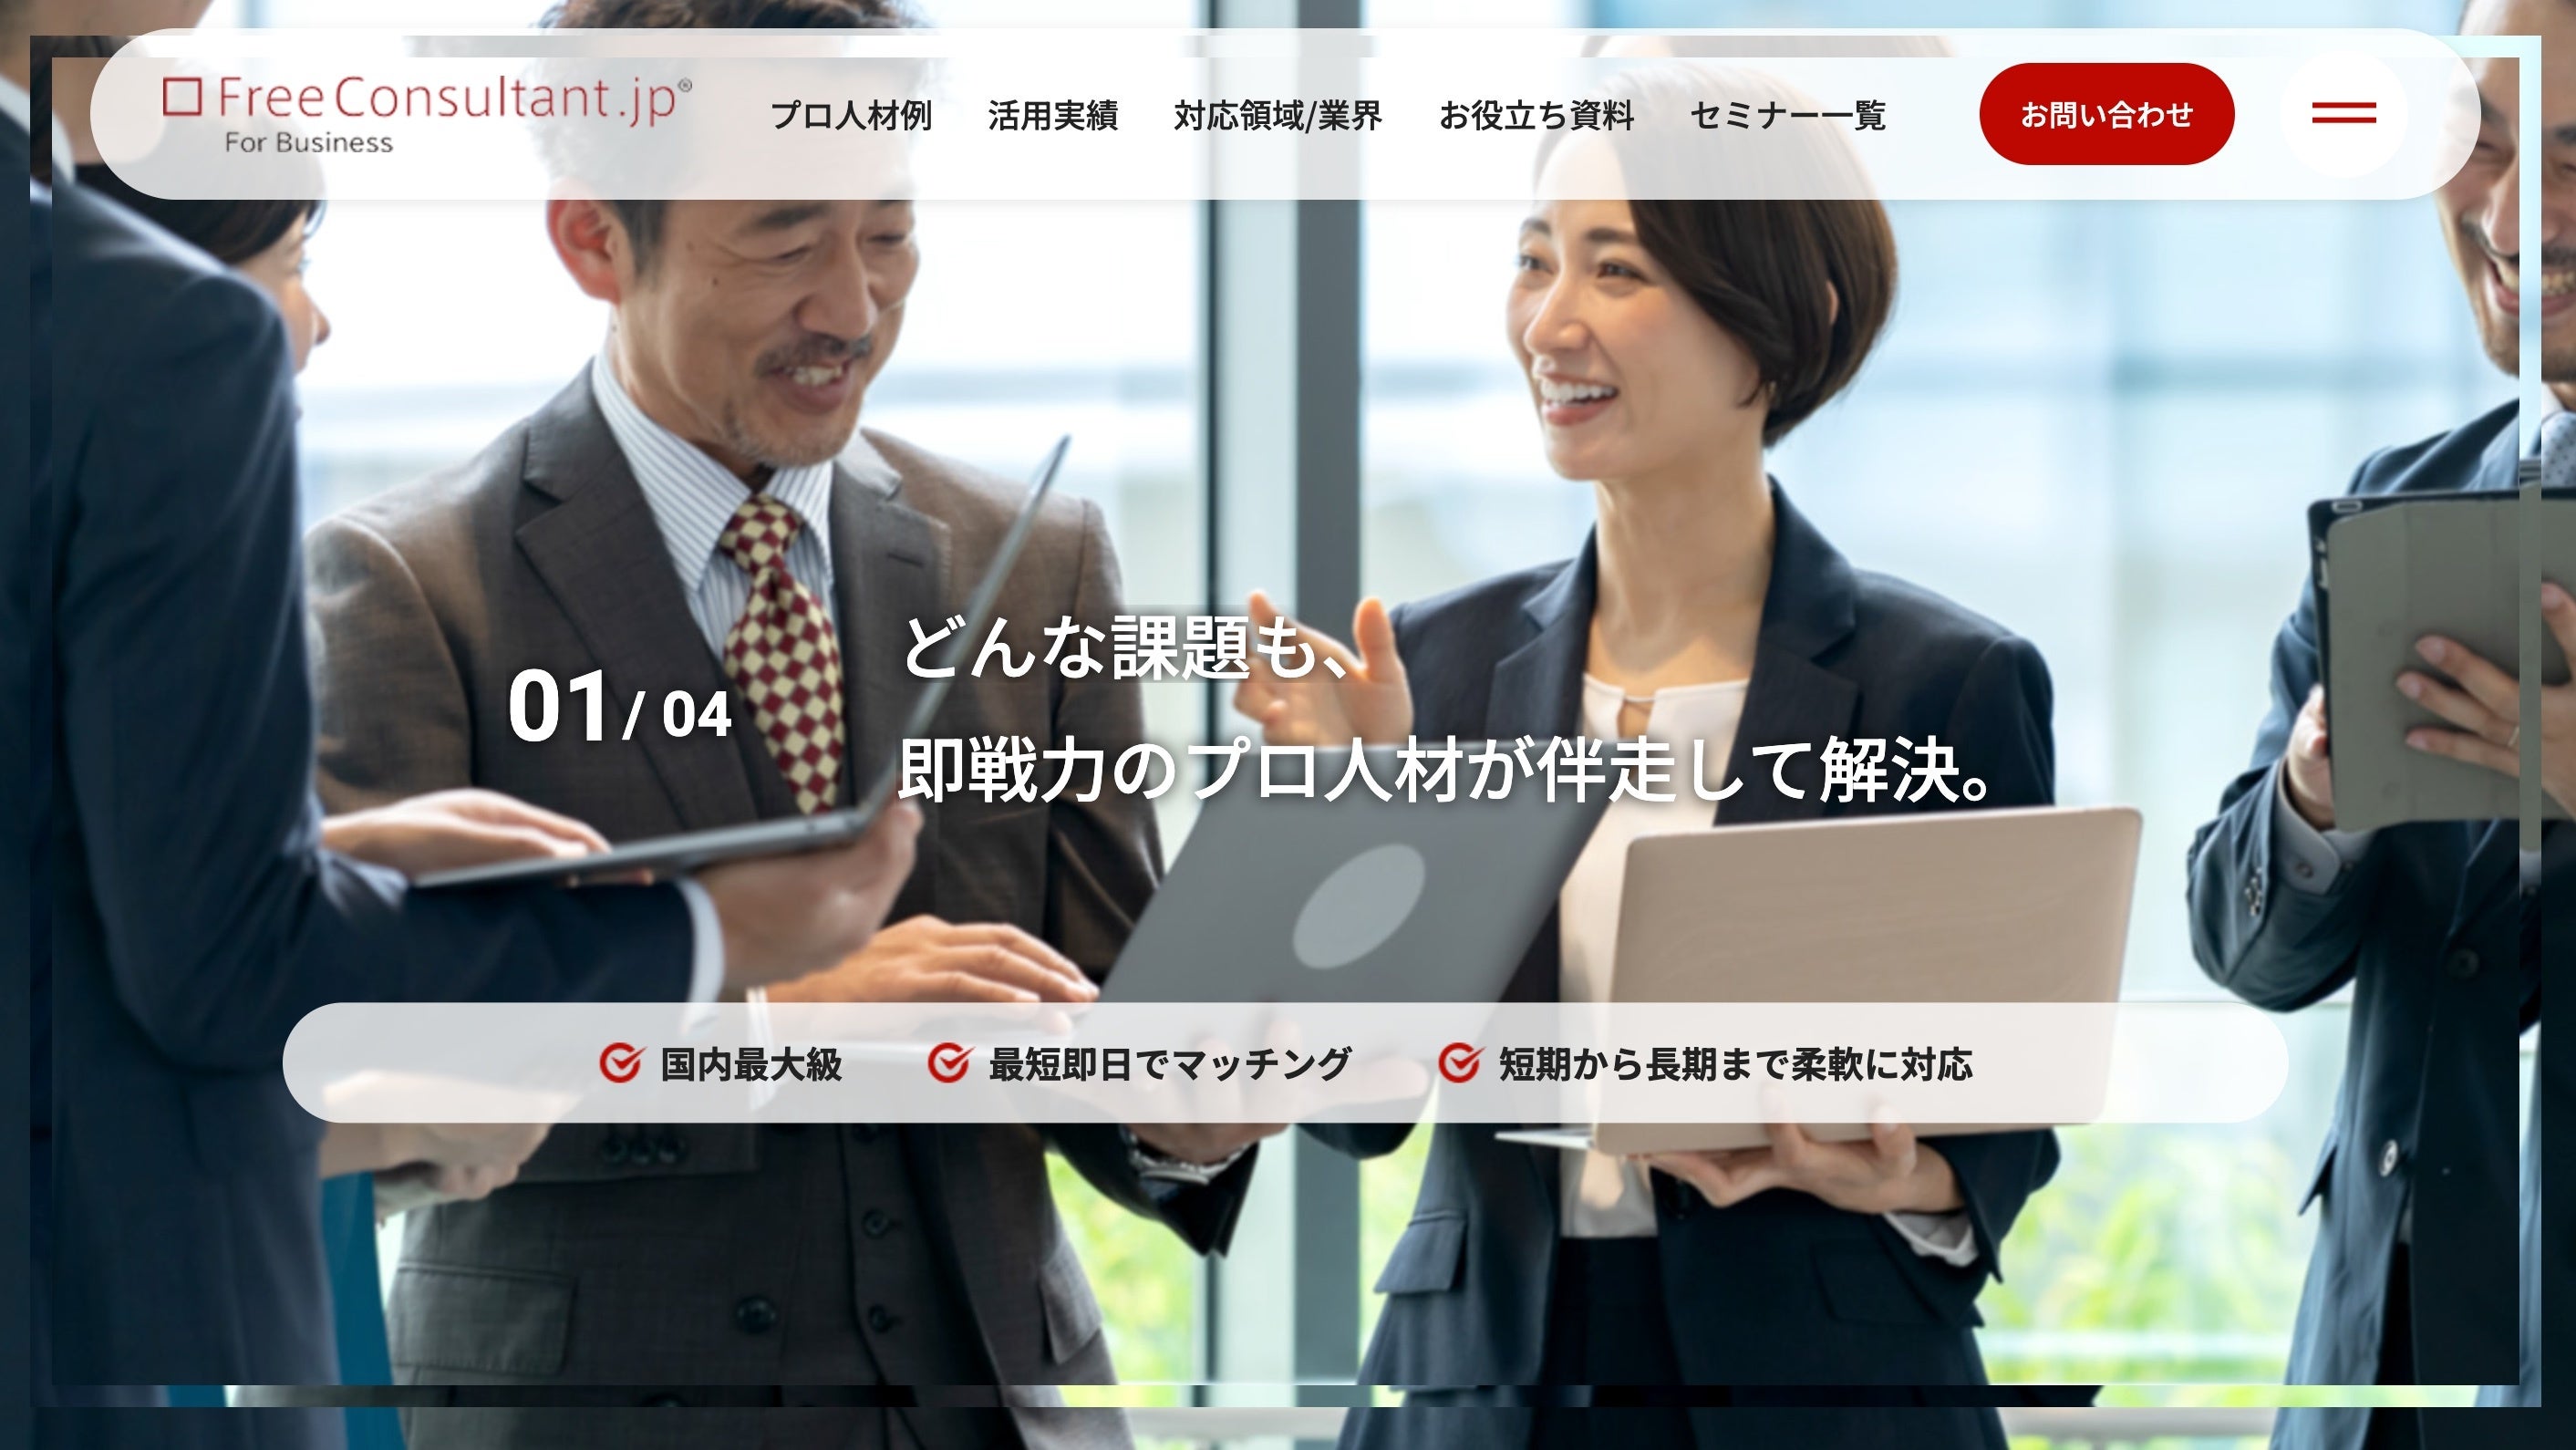 フリーランスのマッチングサービス『フリーコンサルタント.jp』の企業向けサービスサイトをリニューアル